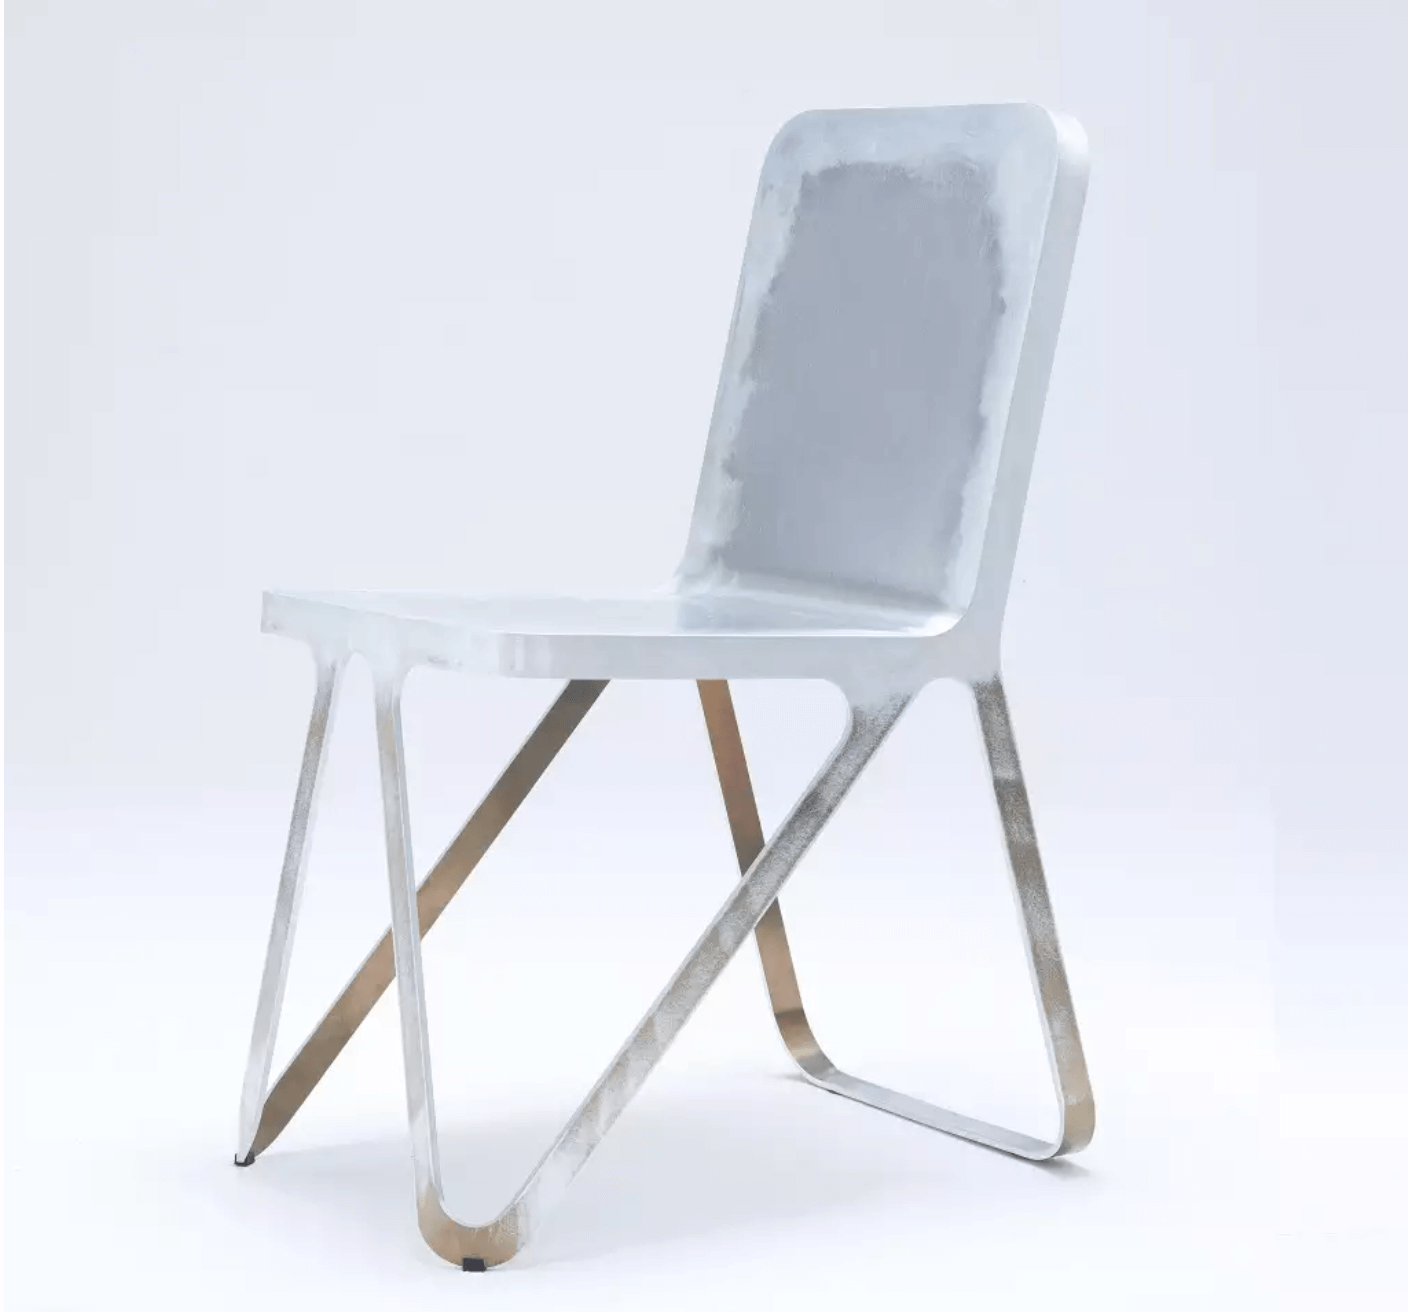 Neocraft - Loop chair aluminium